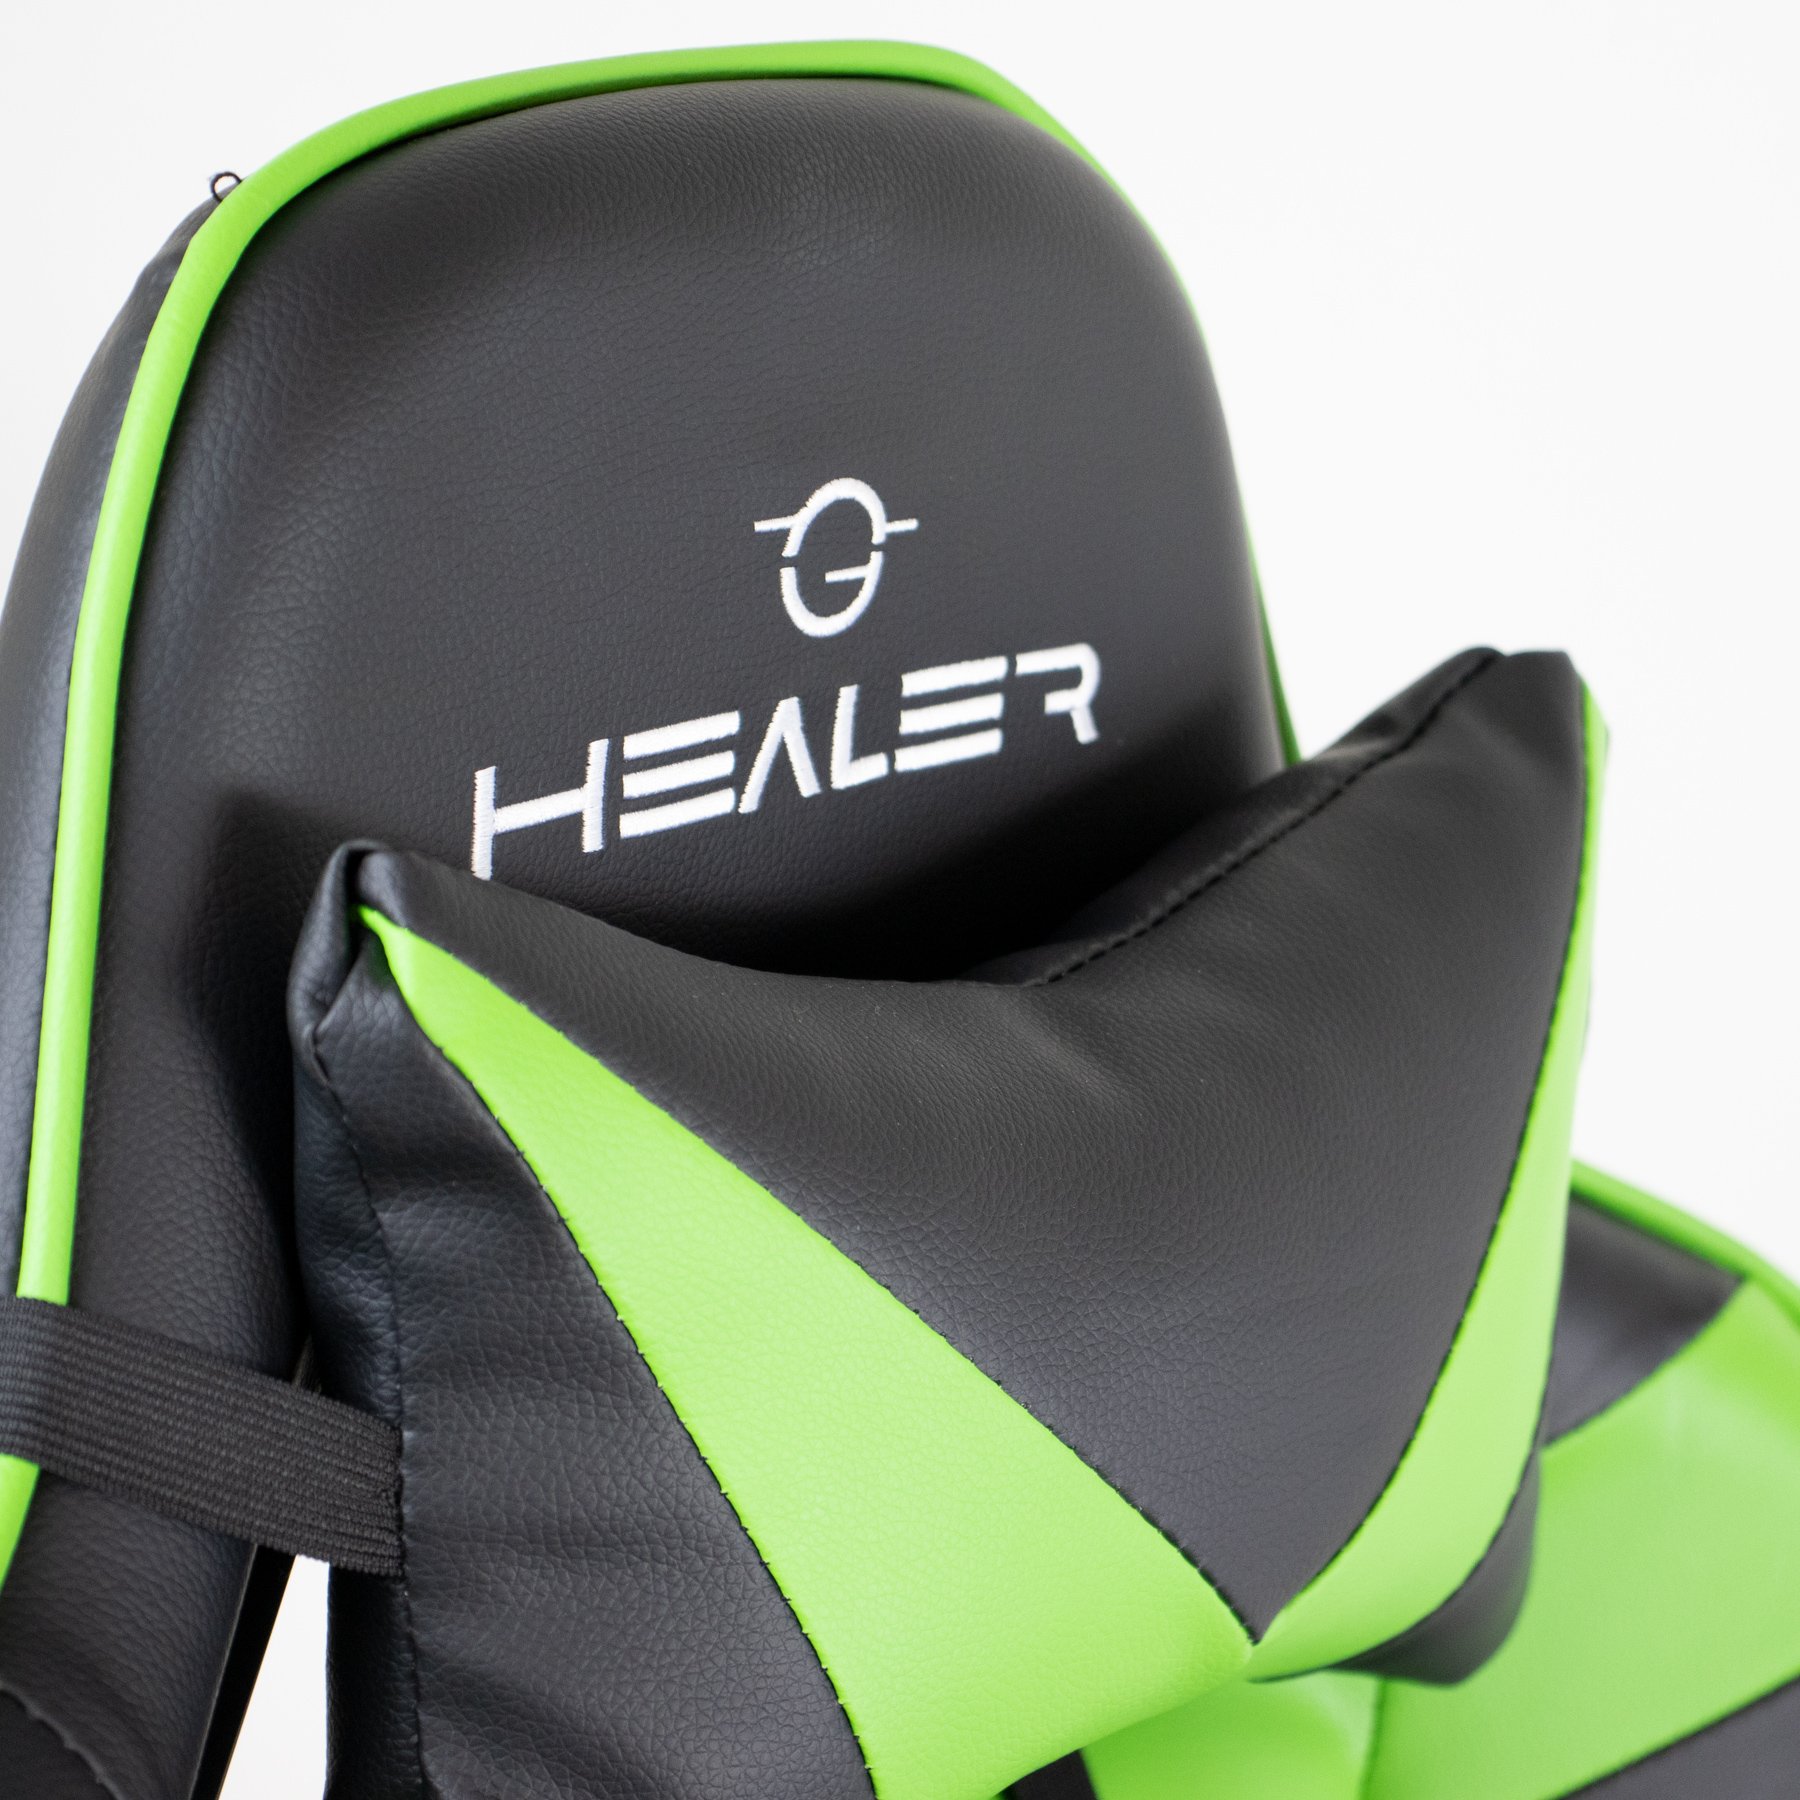 Cadeira Gamer Verde e Preto Healer Level Reclinável Giratória com Apoio de Pés - 7